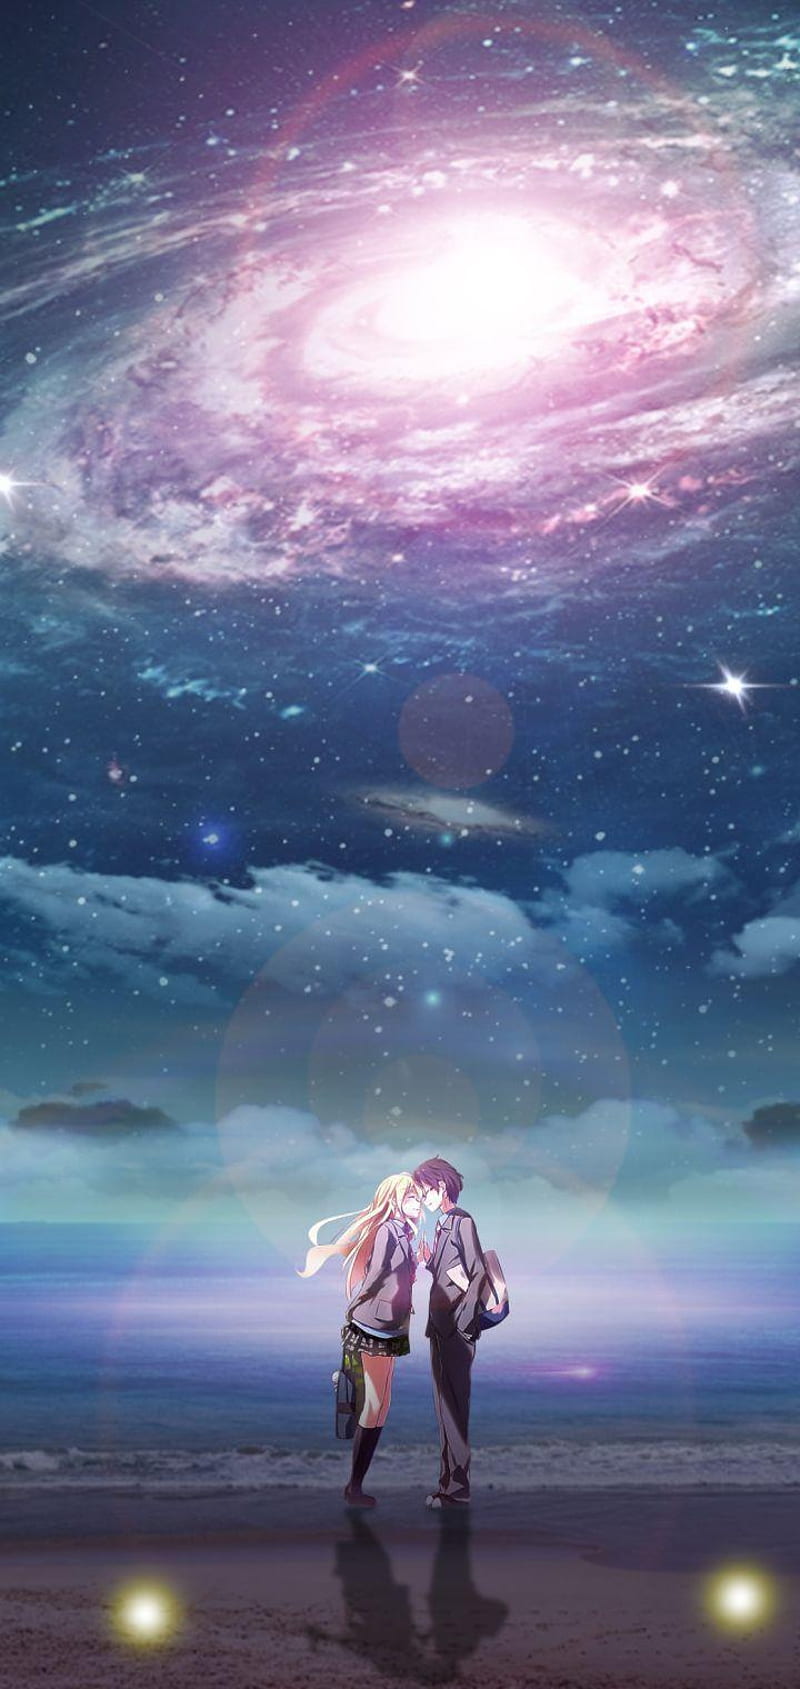 Hình bầu trời đêm anime lãng mạn đẹp nhất